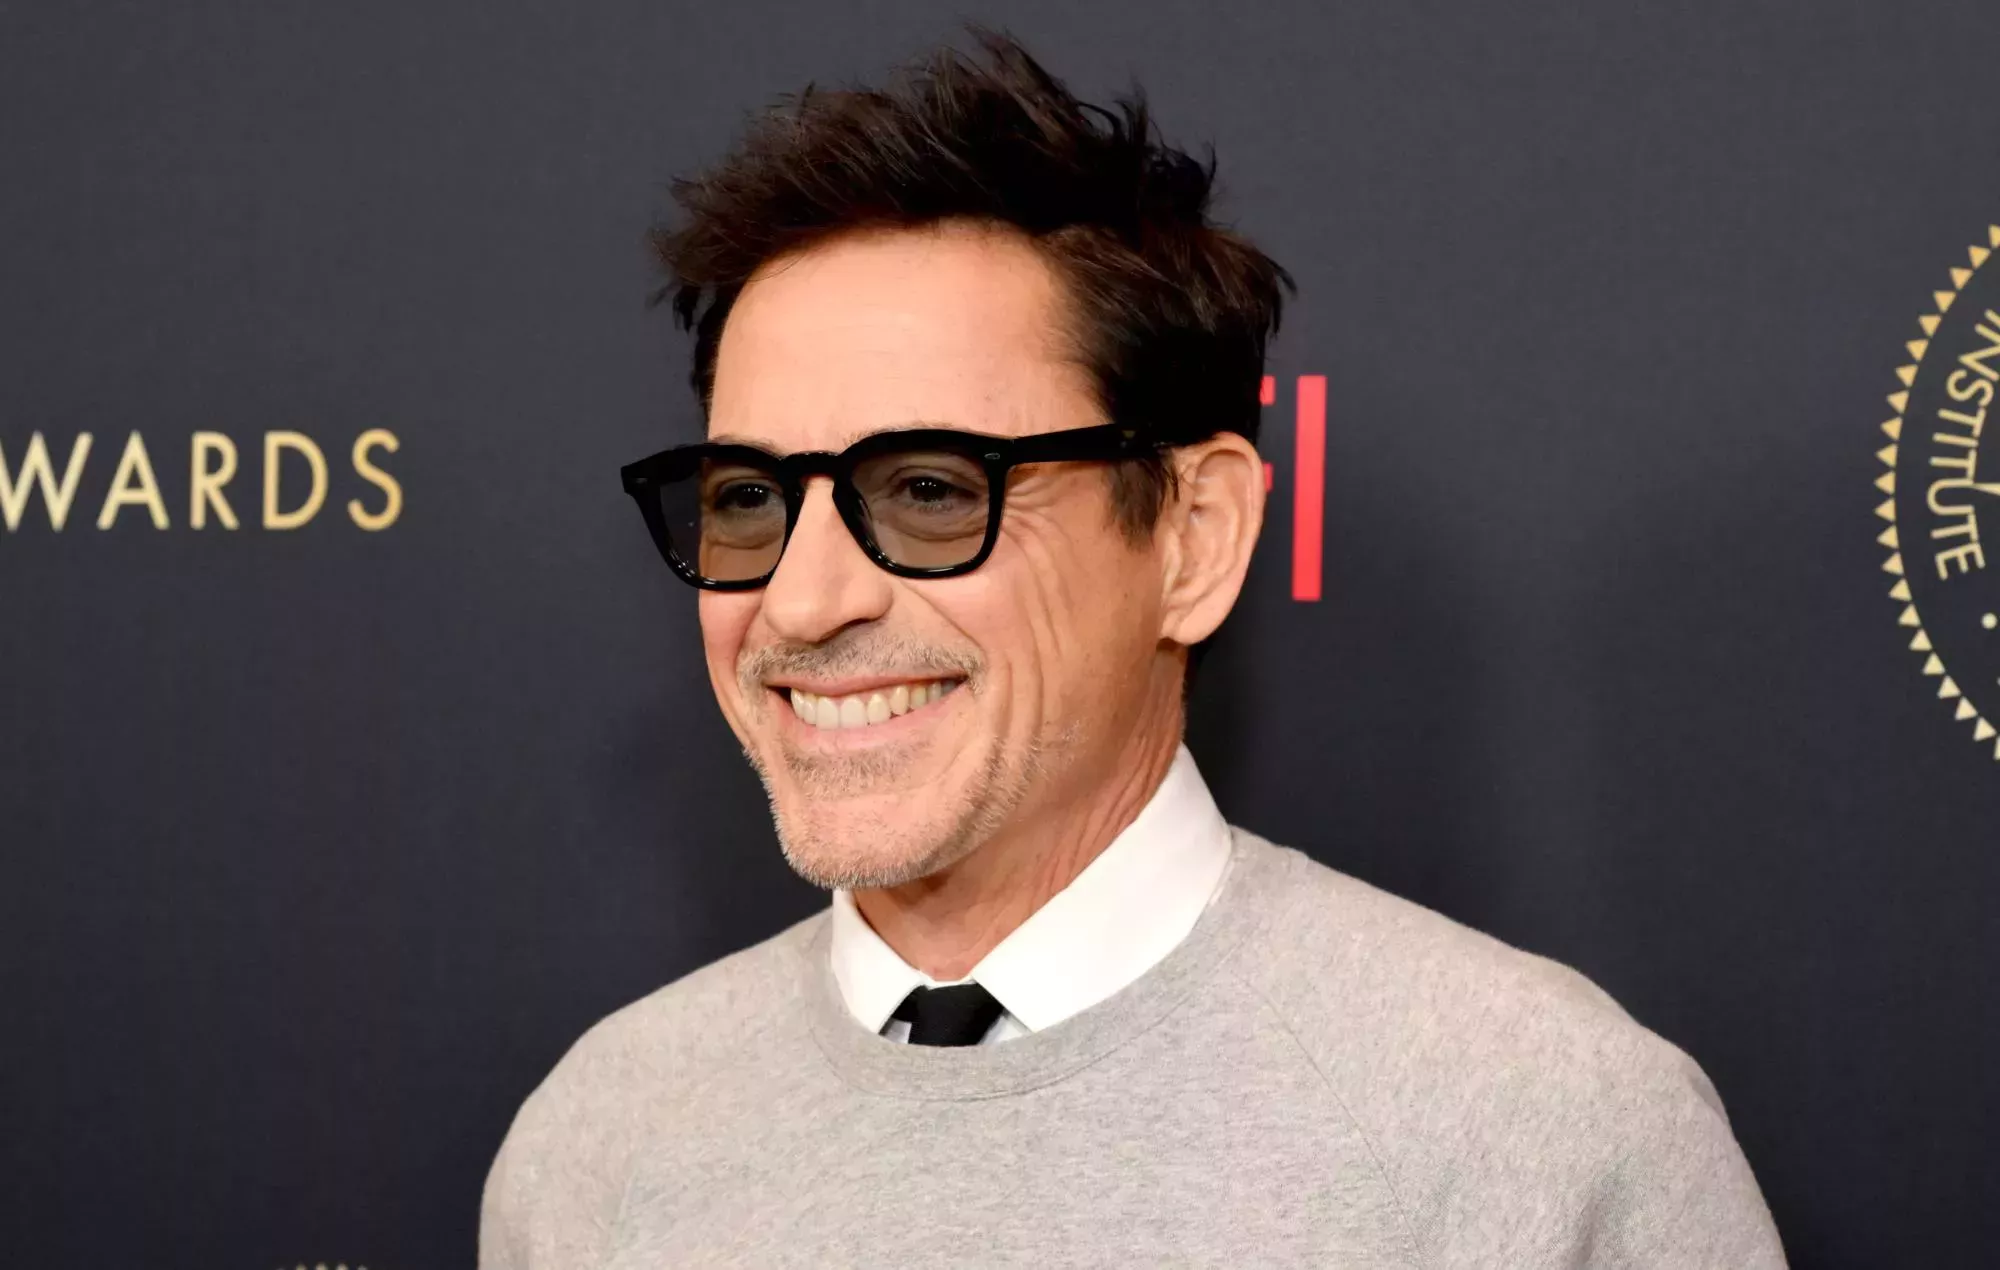 Robert Downey Jr. defiende el 'blackface' de 'Tropic Thunder' como una 